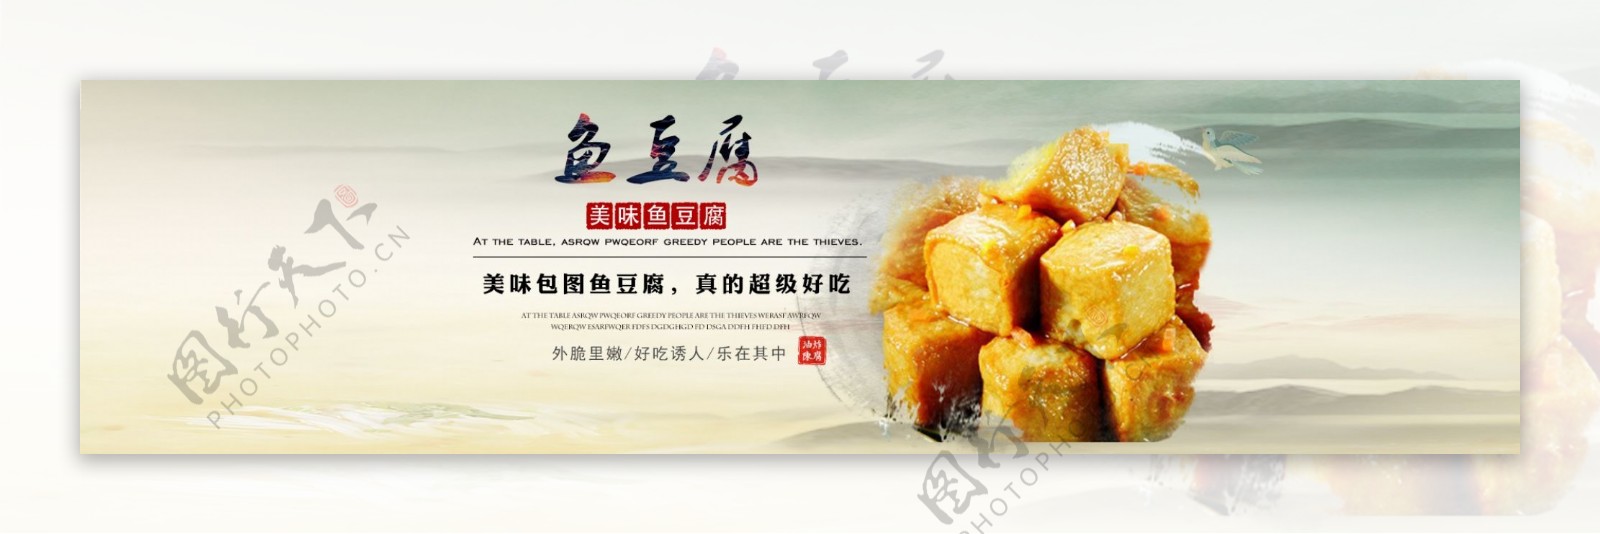 鱼豆腐淘宝美食海报